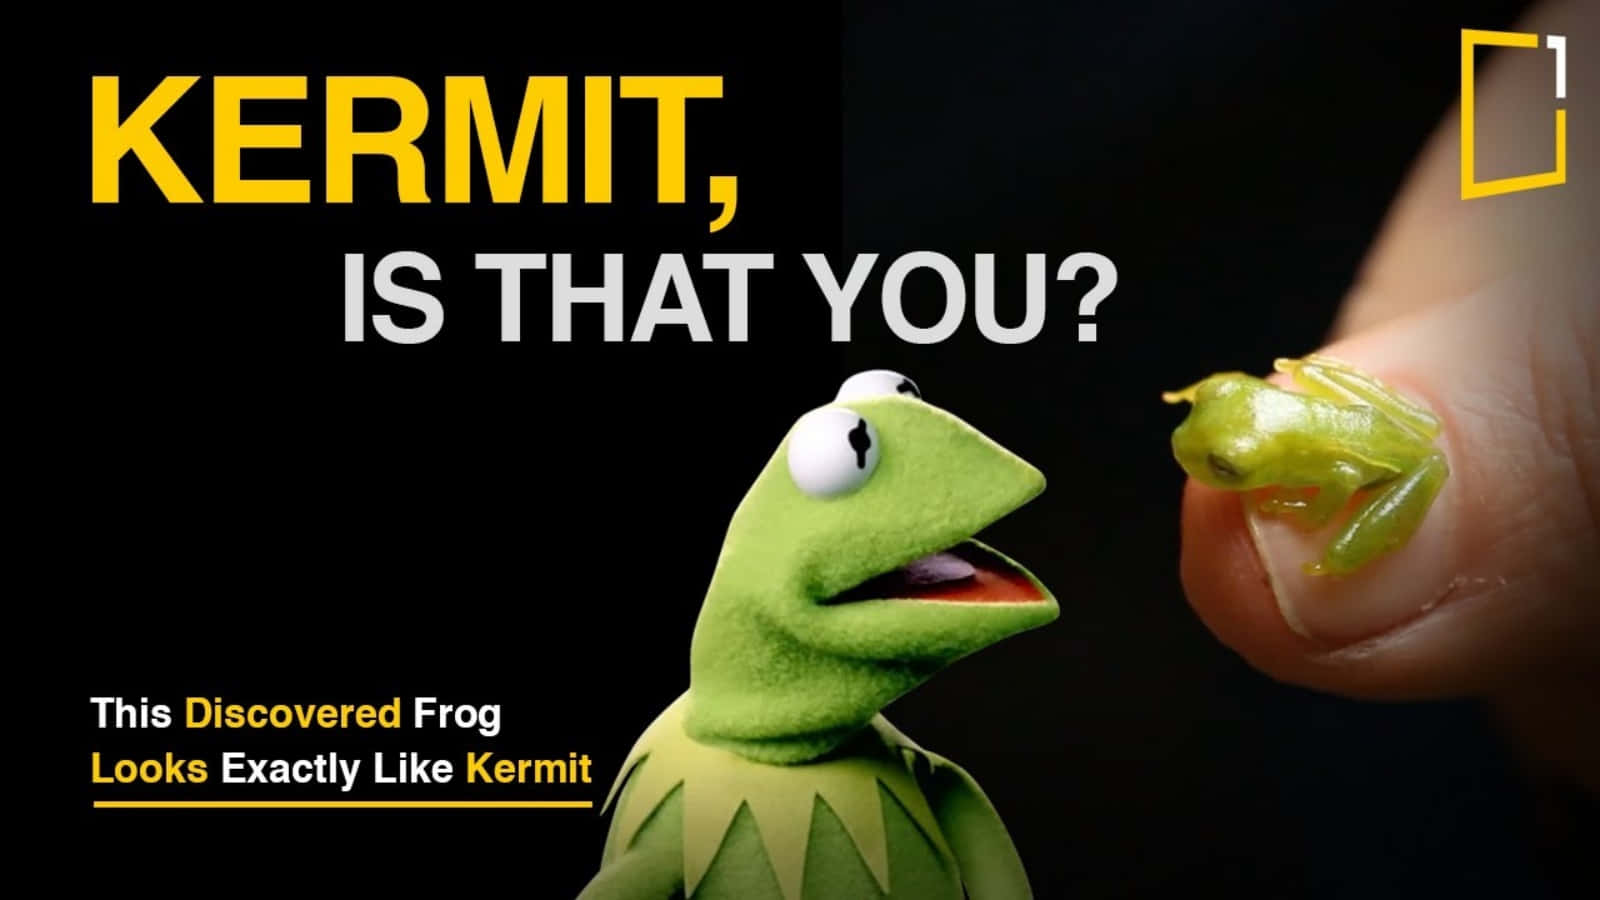 Er det dig der, Sjov Kermit? billedet